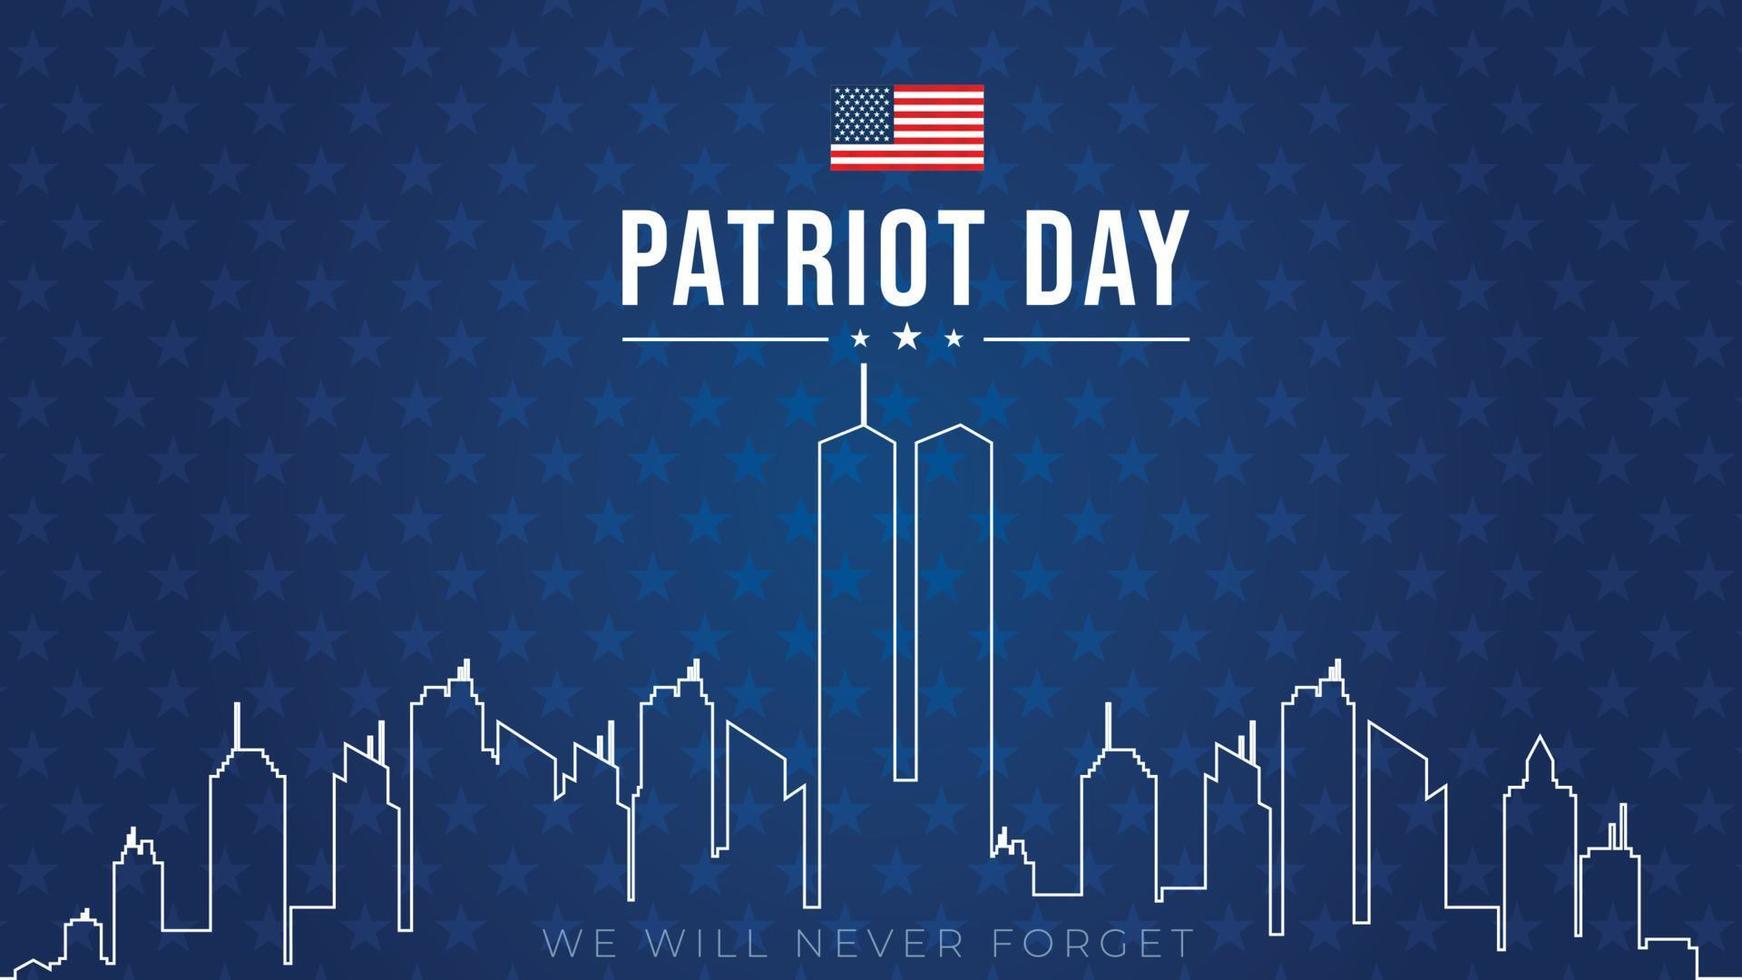 tours jumelles à new york city skyline. affiche vectorielle du 11 septembre 2001. fête des patriotes, 11 septembre, nous n'oublierons jamais, arrière-plan avec la silhouette de la ville de new york. vecteur